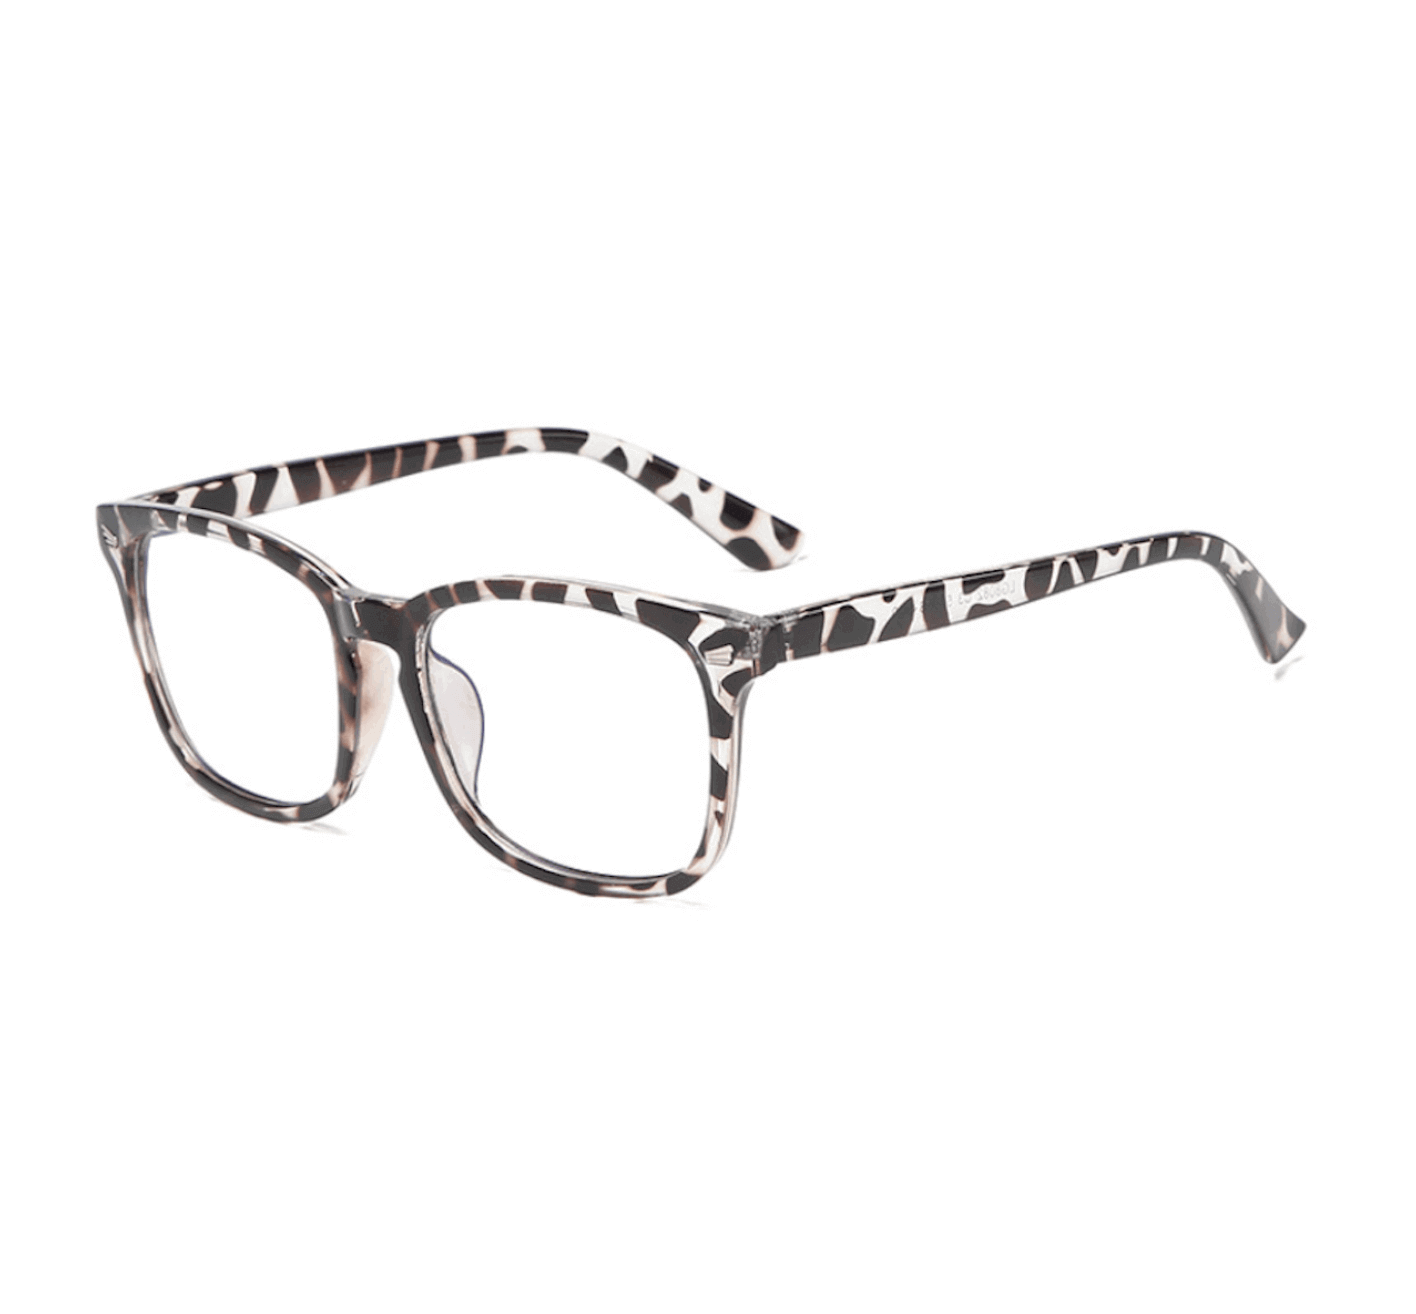 Memory Plastic Glasses Frame, glasses supplier